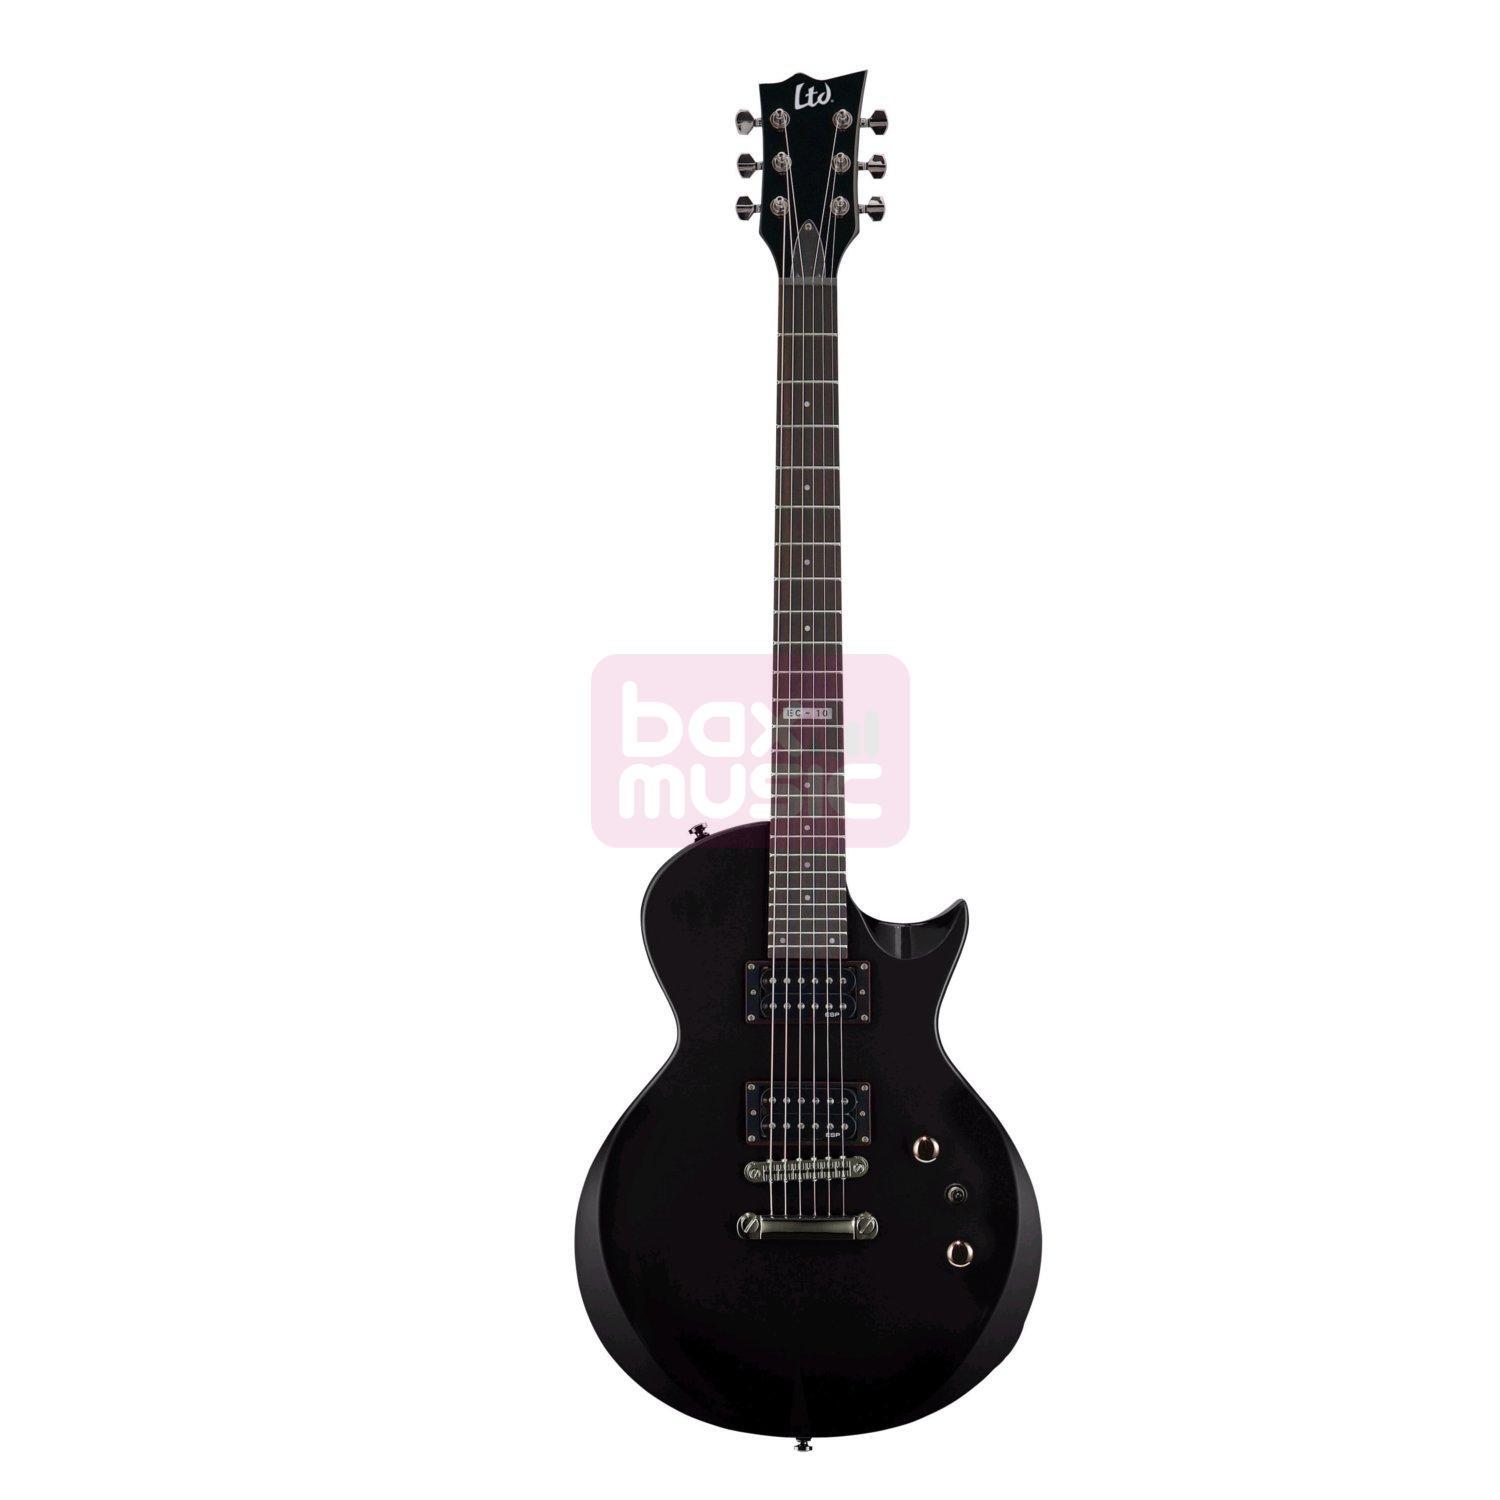 ESP LTD. EC-10 BLK elektrische gitaar Black incl. gitaartas